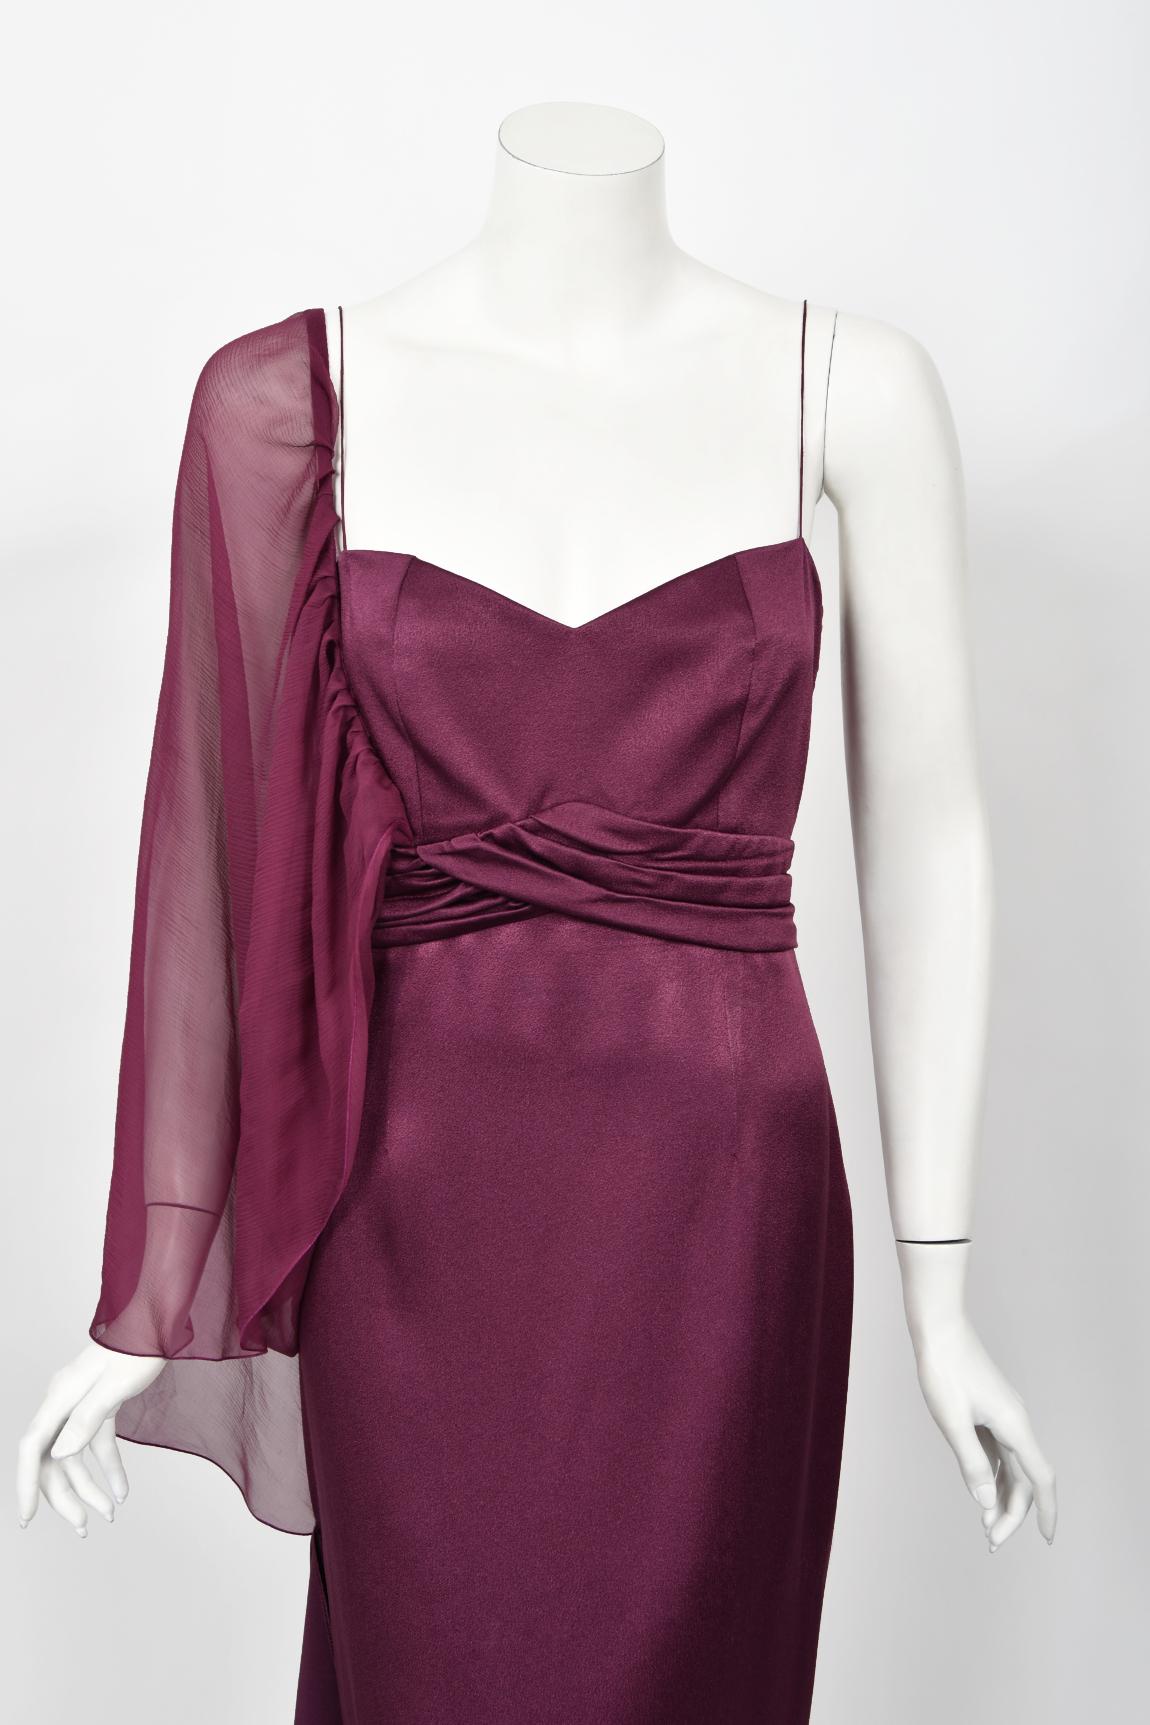 Une robe drapée asymétrique en soie violet prune incroyablement chic et ultra rare de Christian Dior, issue de la très acclamée collection printemps-été 2000 de John Galliano. John Galliano est largement considéré comme l'un des créateurs de mode